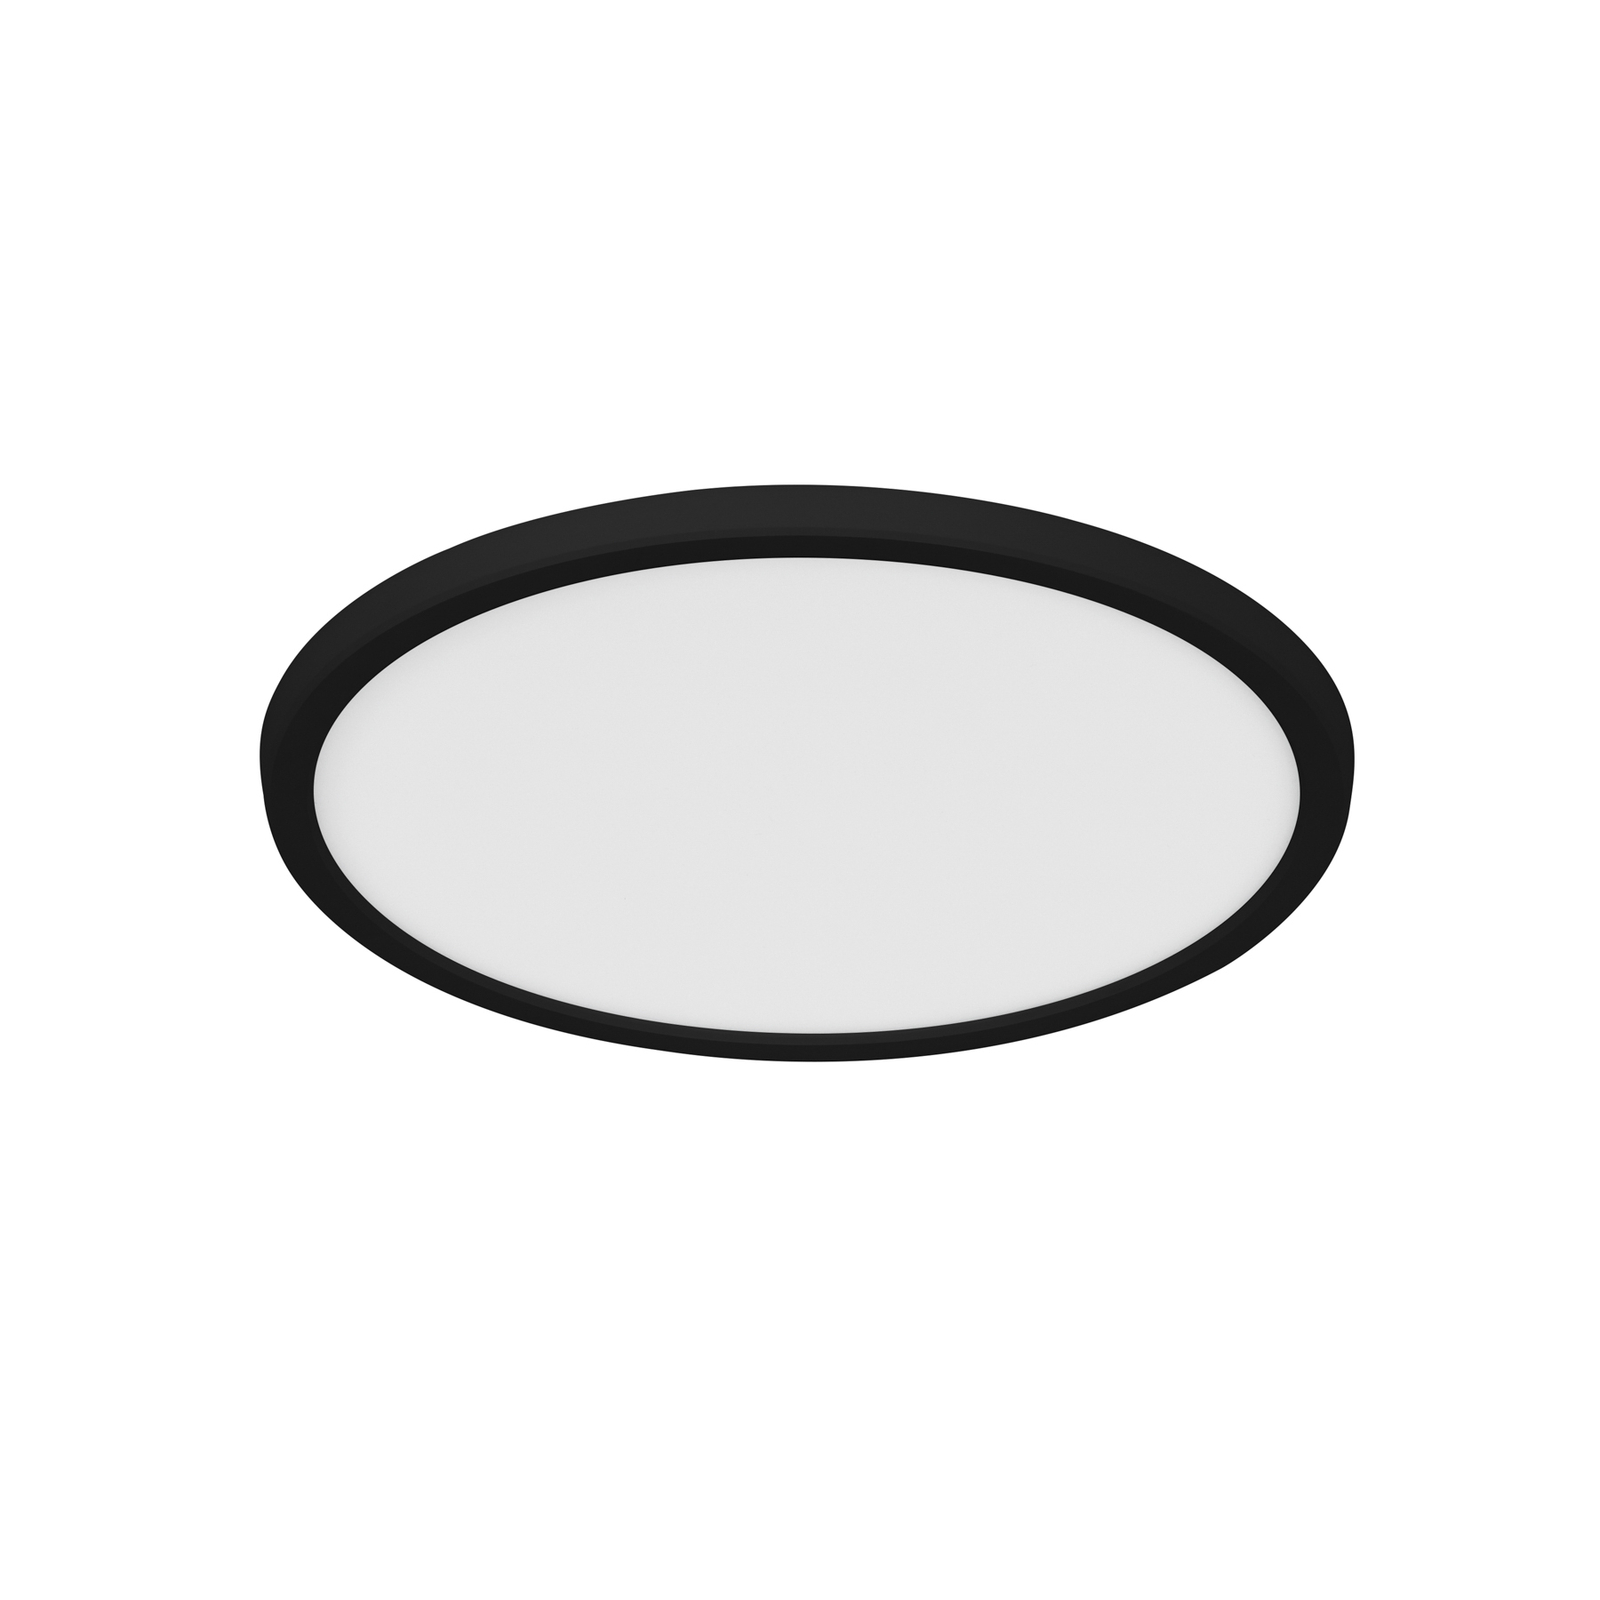 LED stropné svietidlo Oja Smart, čierne, Ø 29 cm